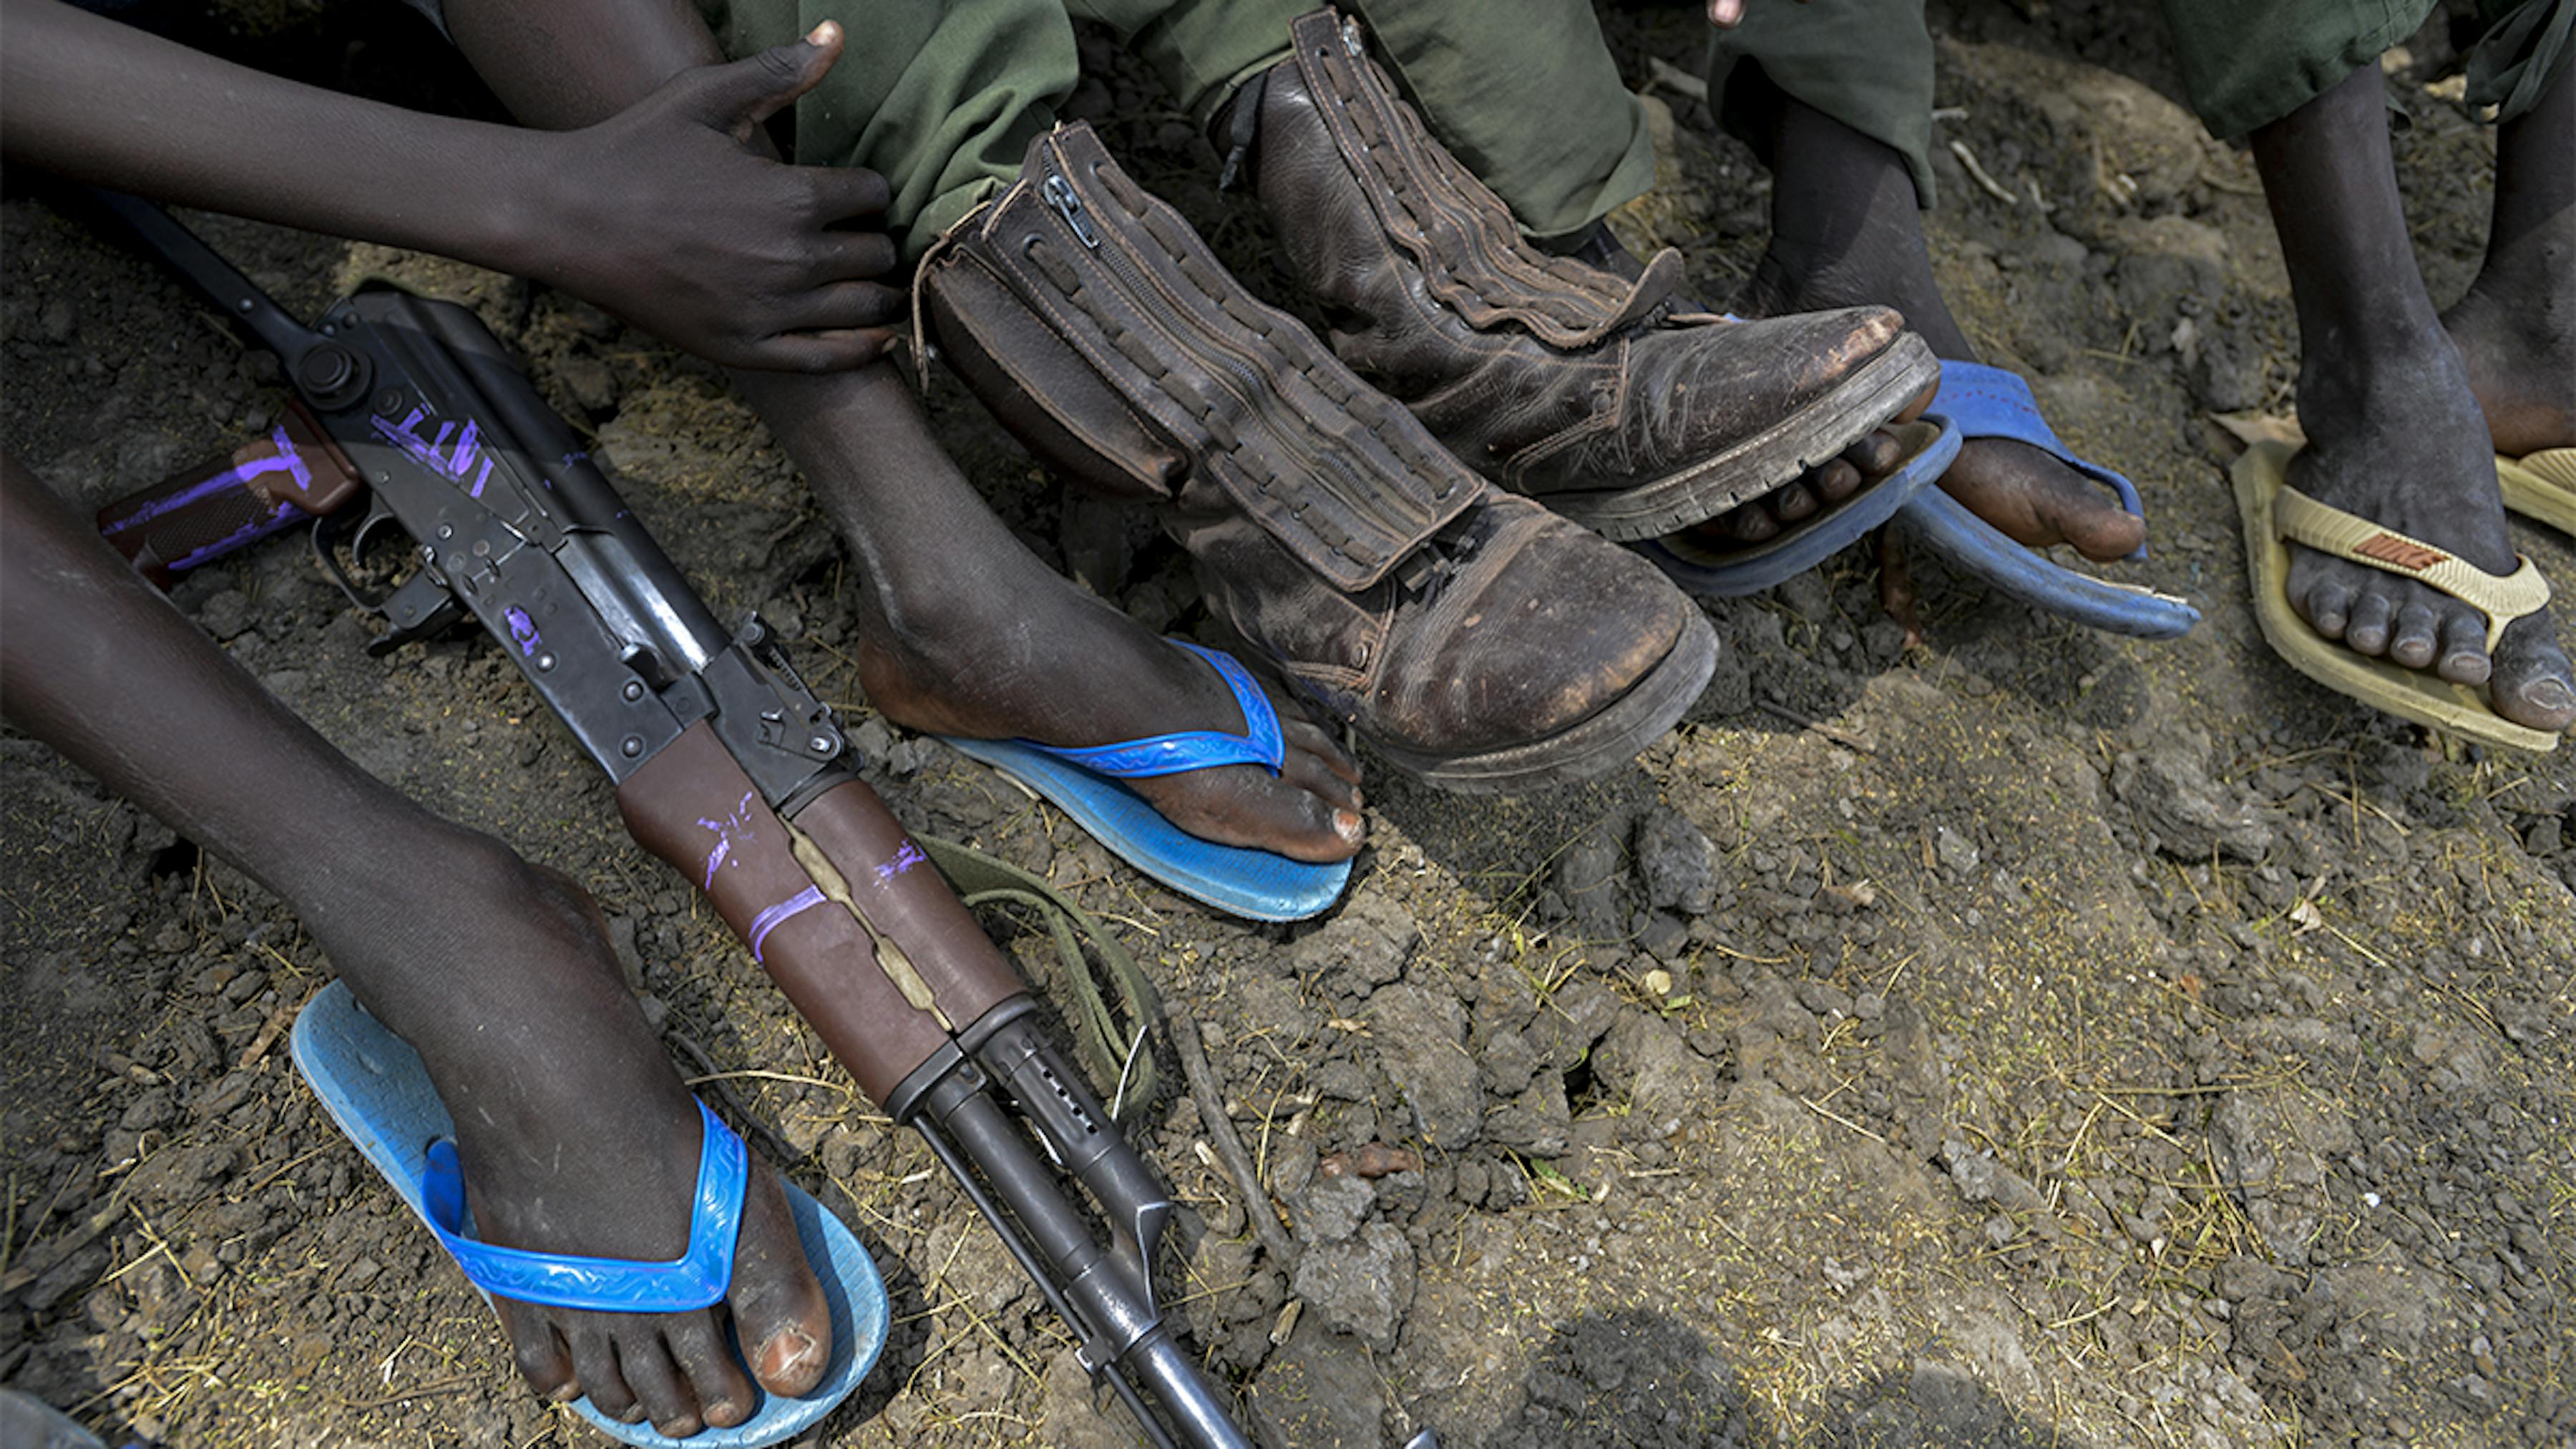 Sud sudan, alcuni bambini soldato attendono di essere rilasciati dai gruppi armati.